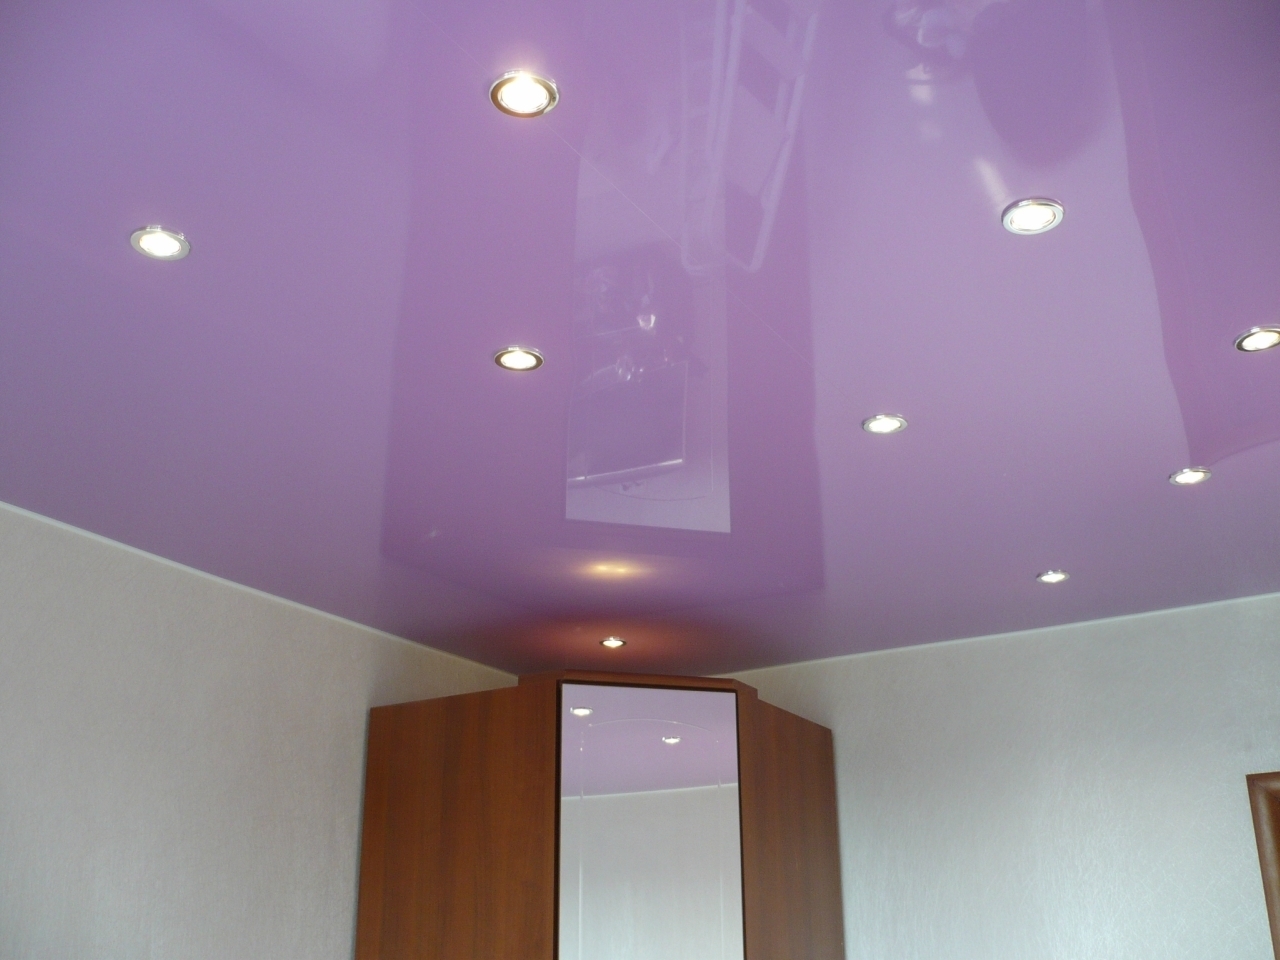 Глянцевые натяжные потолки – эффектный штрих любого интерьера и техника трансформации пространства